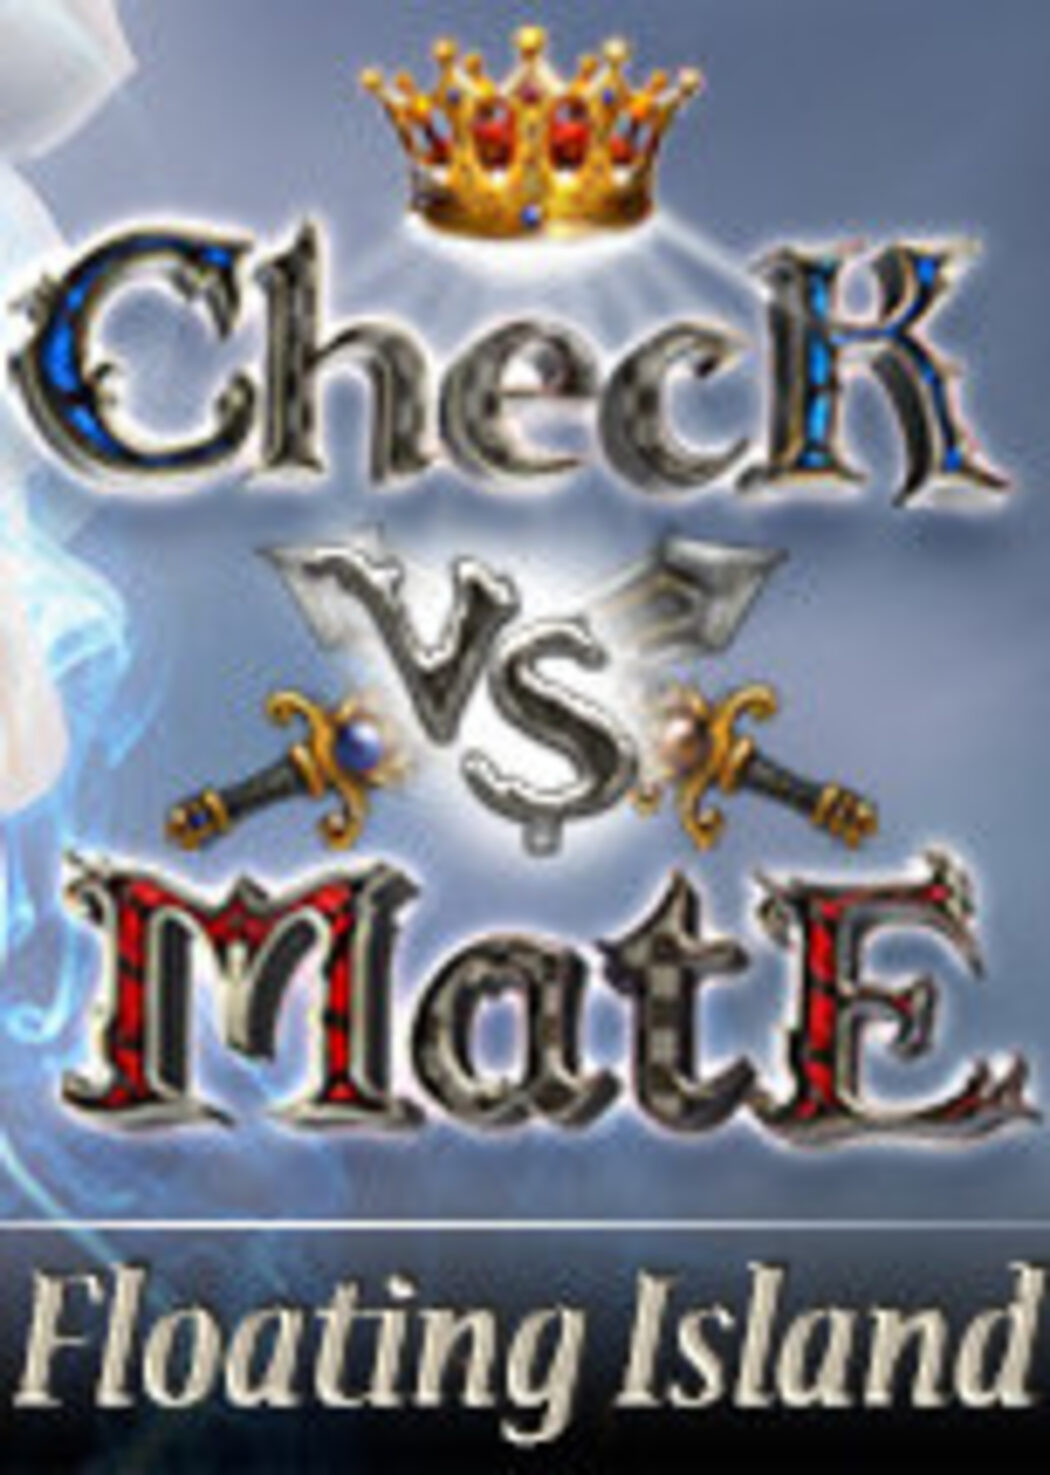 Battle vs. Chess - DLC 2 Dark Desert [PC